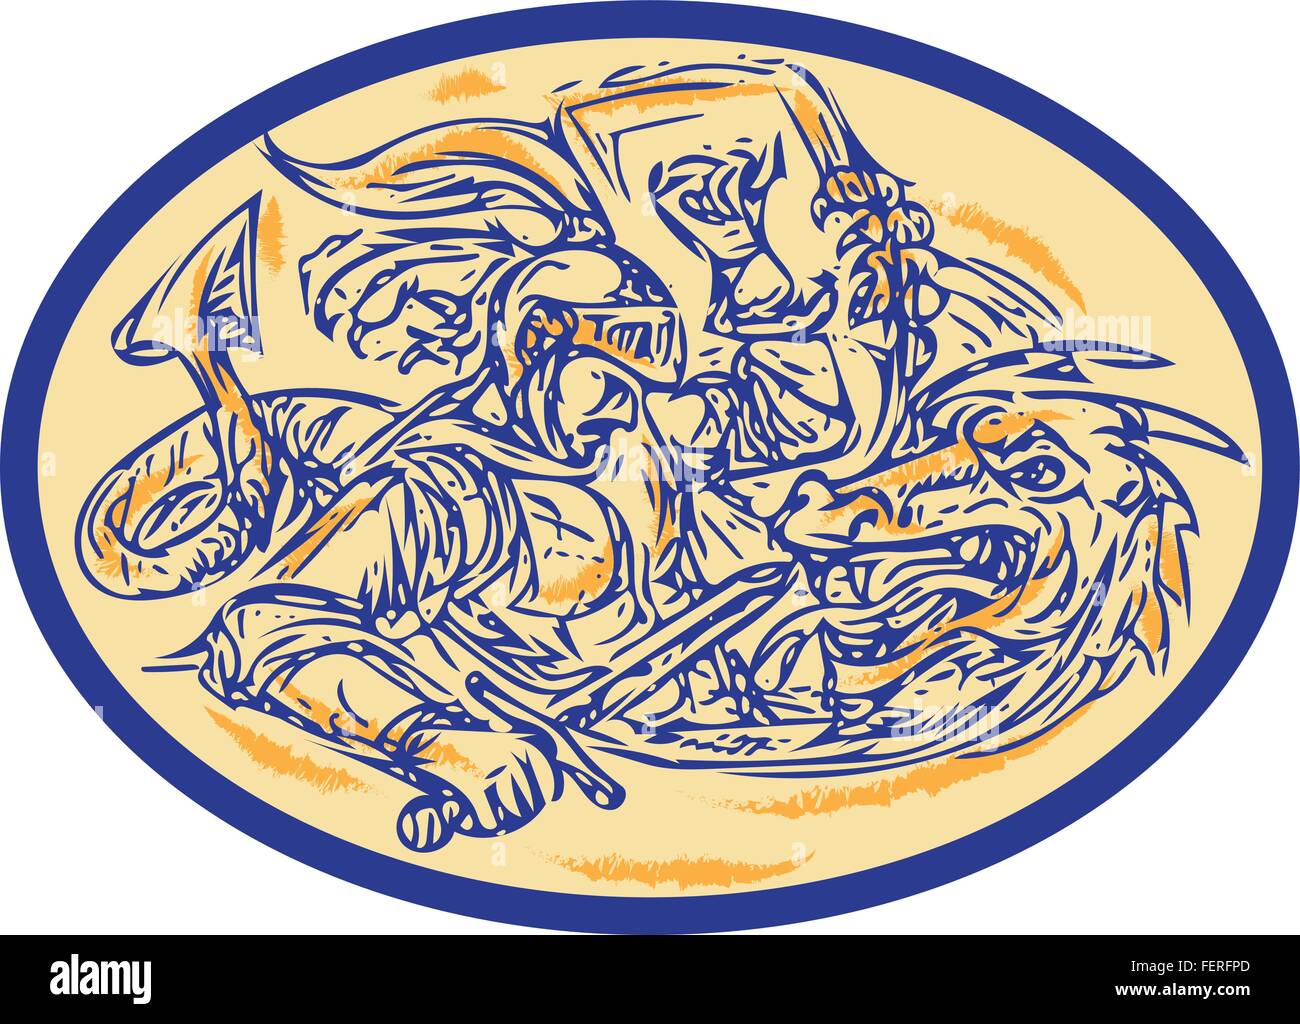 Croquis dessin illustration style de St George combats dragon set à l'intérieur de la forme ovale. Illustration de Vecteur